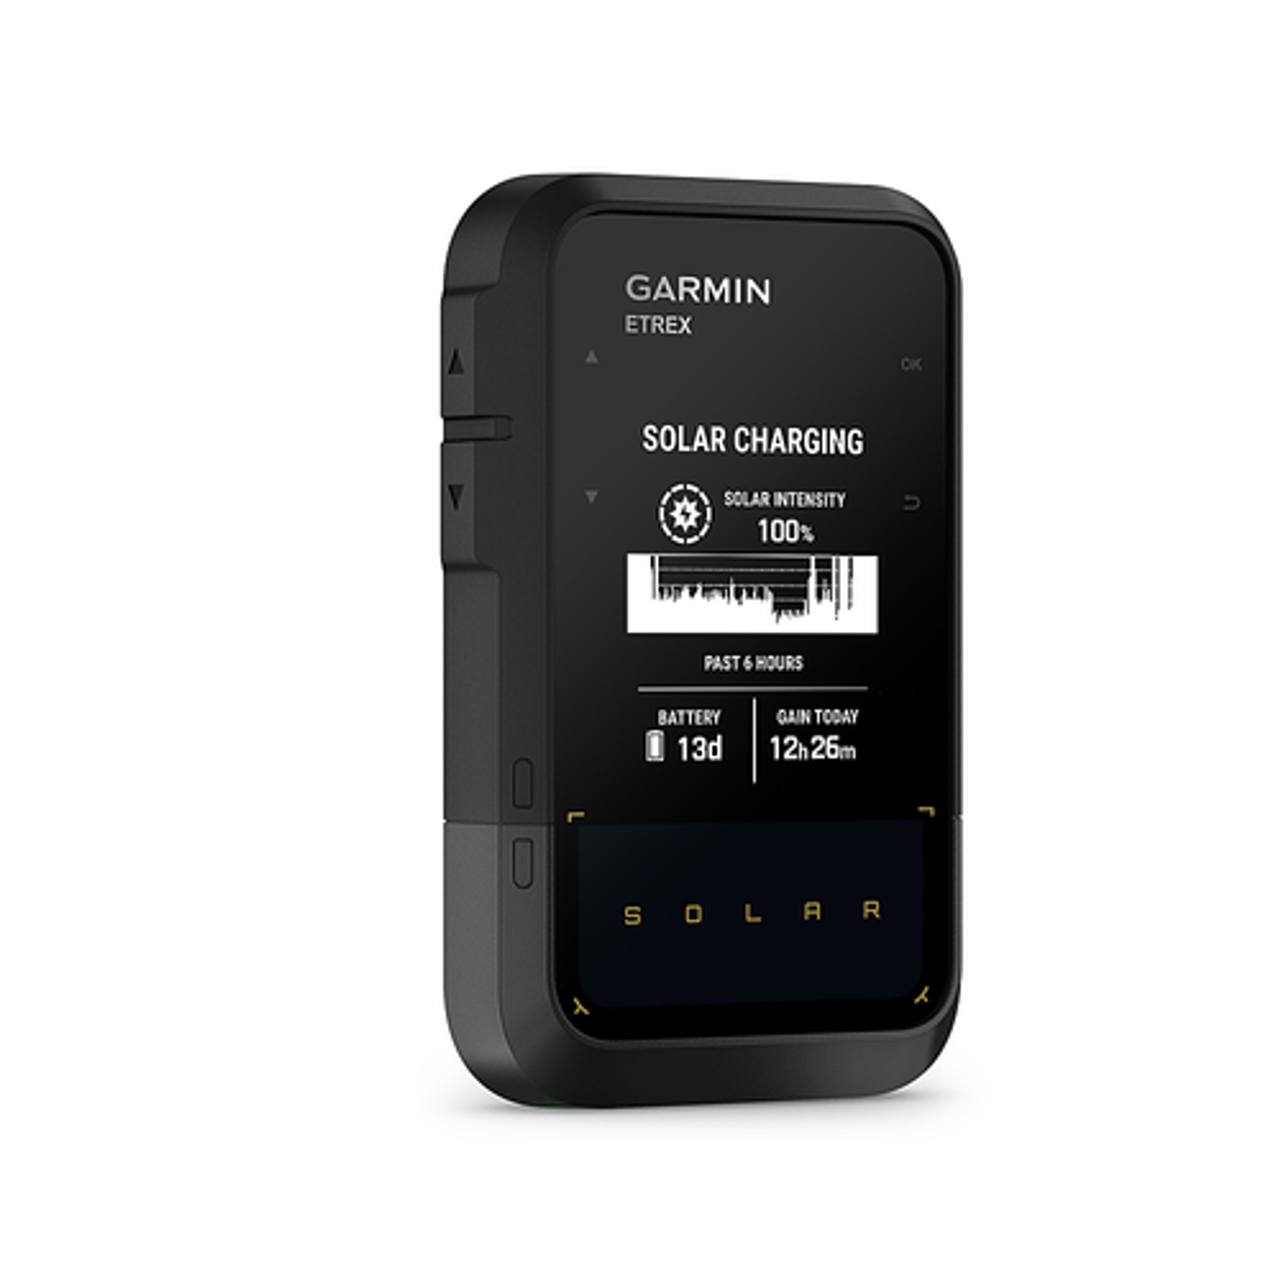 Garmin - eTrex Solar 2.2" GPS - Black